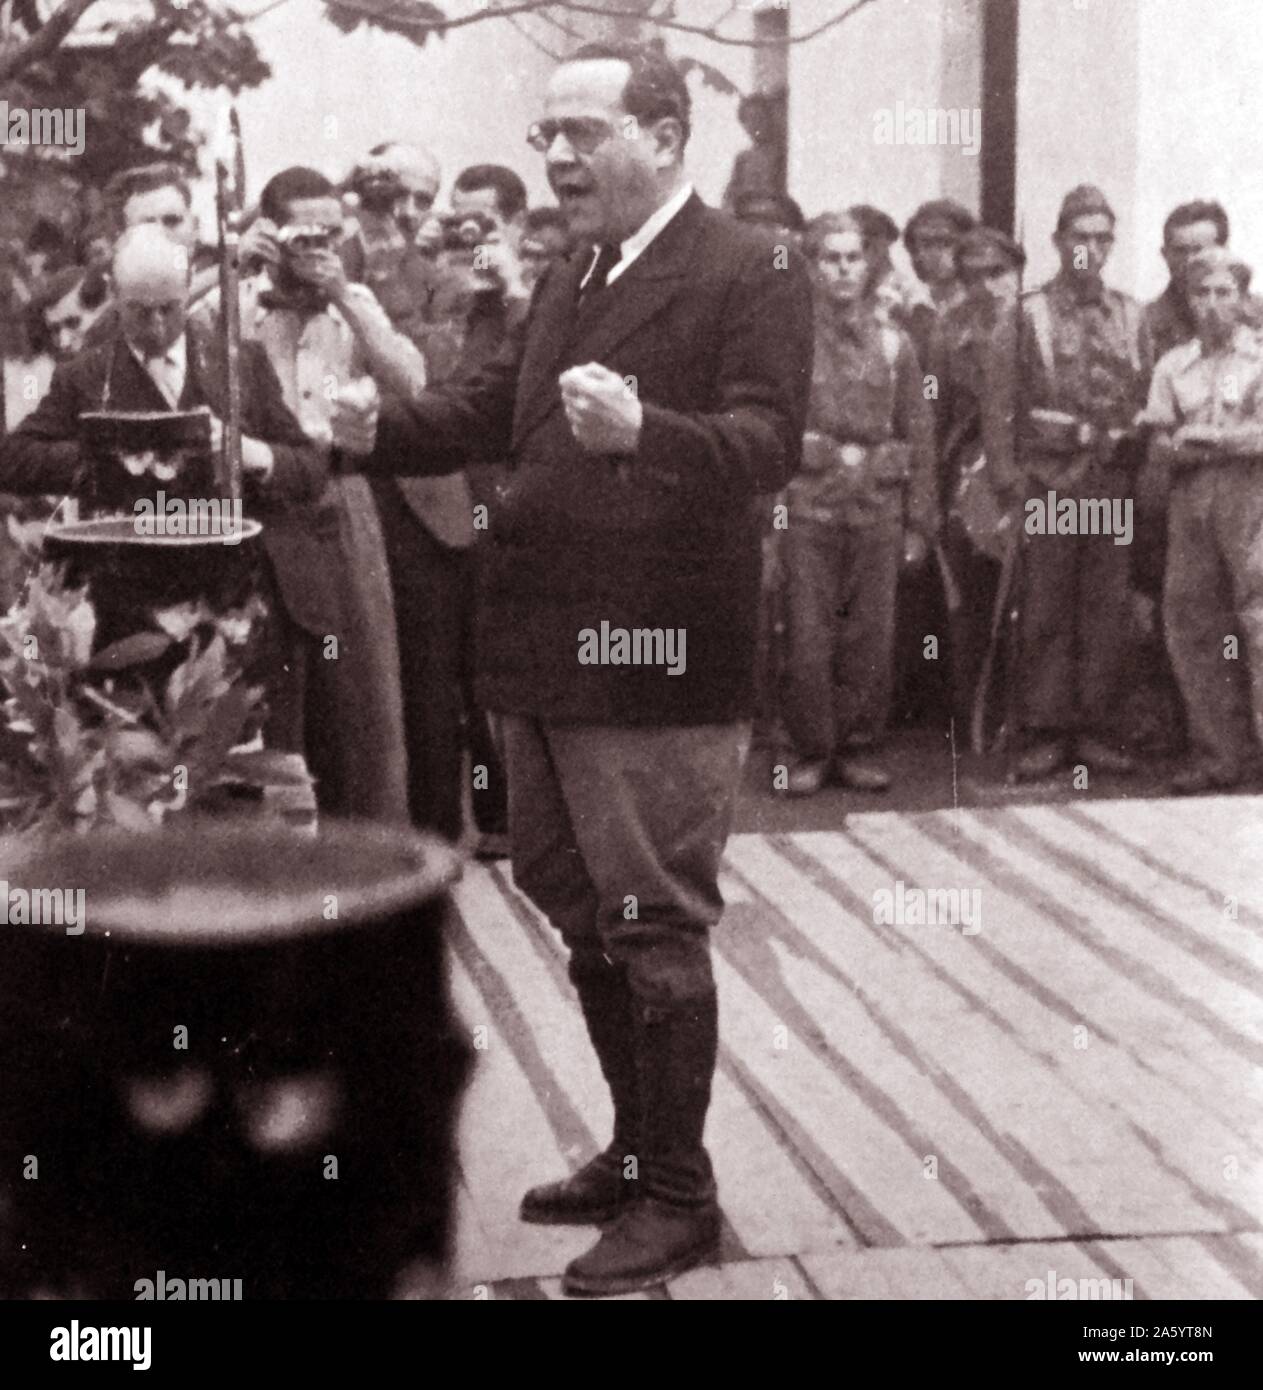 Juan Negrín y López (1892 - 12 novembre 1956), politico spagnolo e medico. leader del socialista spagnolo Workers' Party (PSOE) e servita come ministro delle finanze. Egli è stato l'ultimo lealisti premier di Spagna (1937-39), presieduto la sconfitta delle forze repubblicane da nazionalisti sotto il generale Francisco Franco durante la Guerra Civile Spagnola. Foto Stock